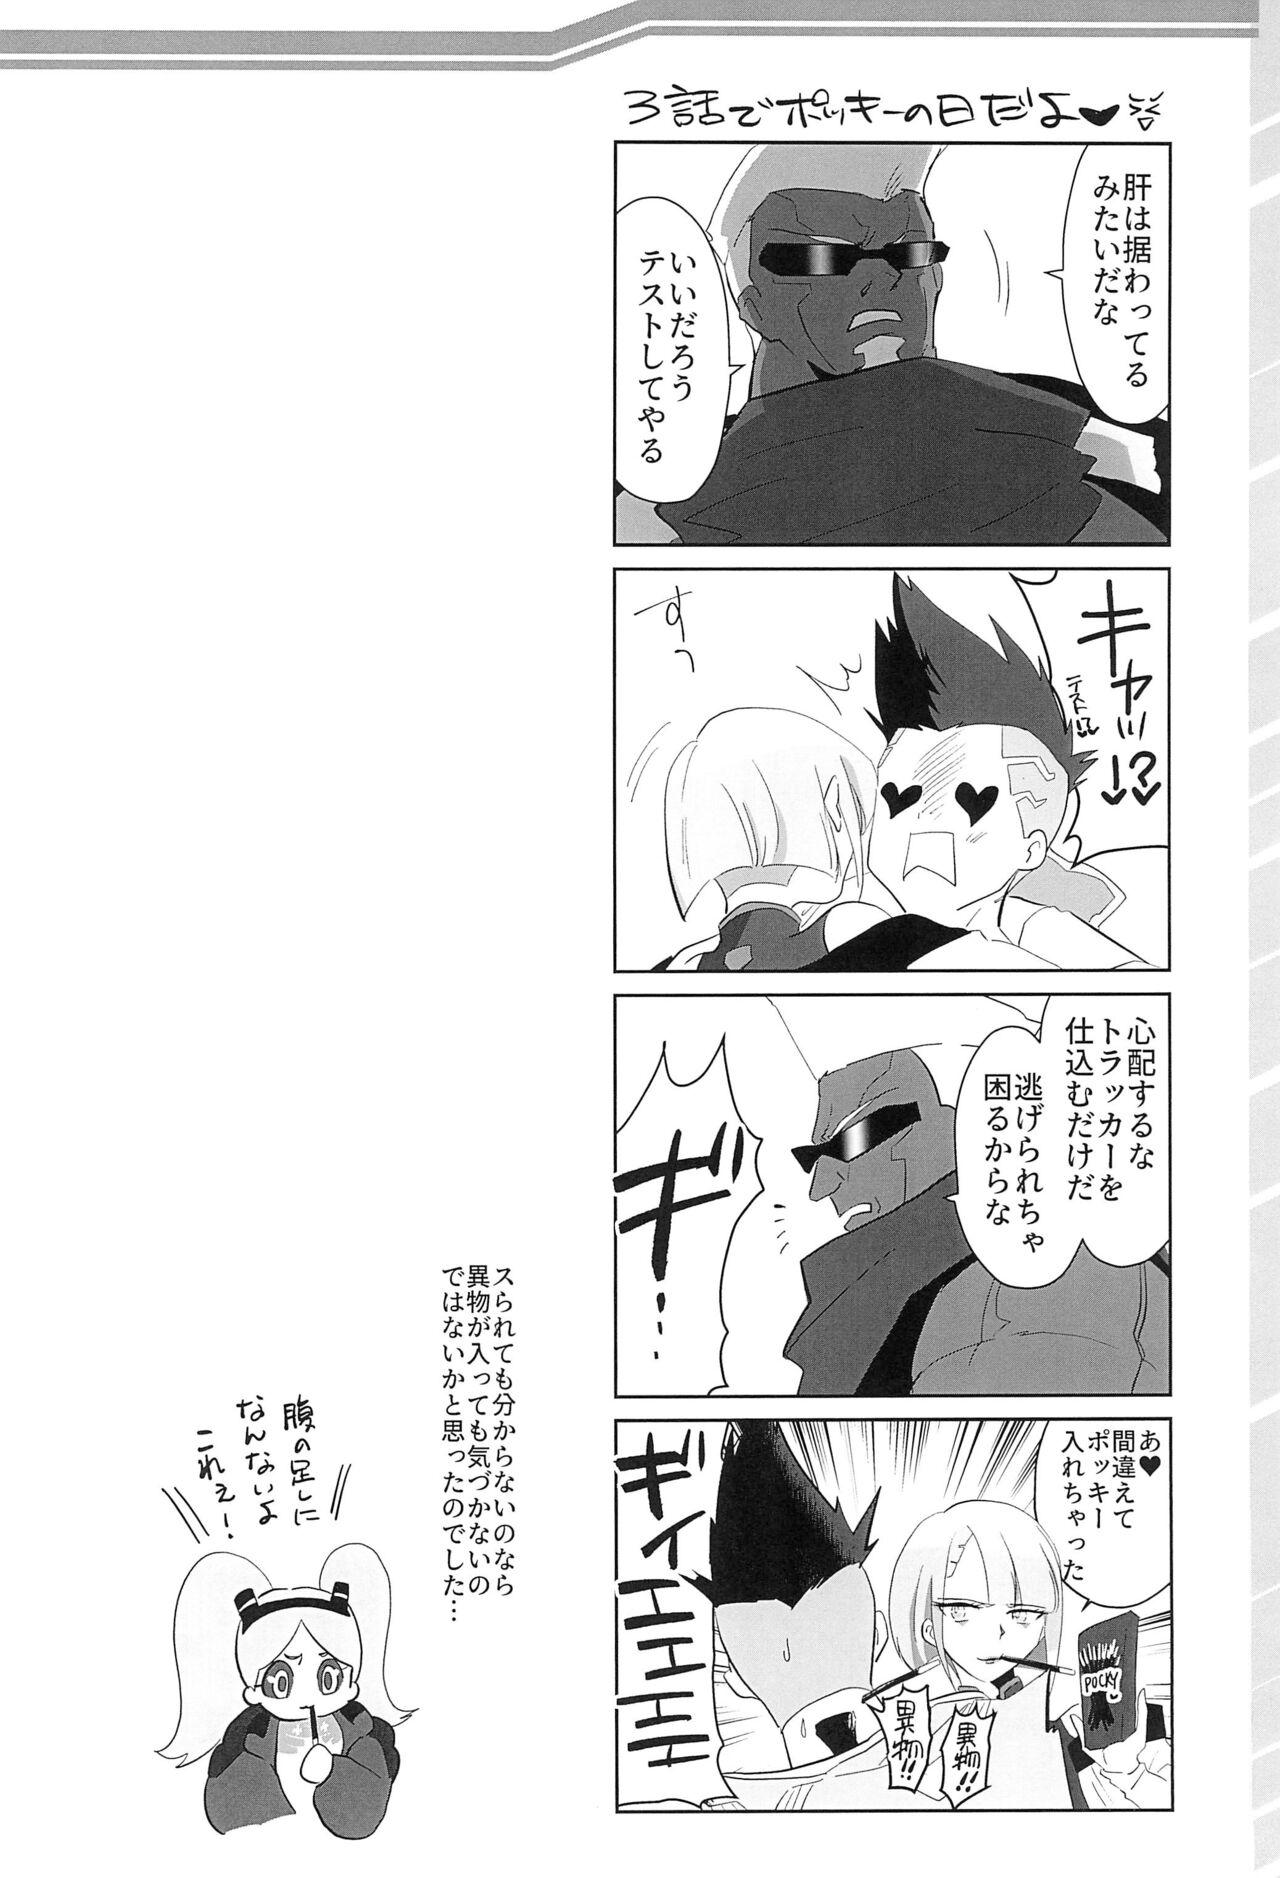 Mallu runners high! - Cyberpunk Kashima - Page 8